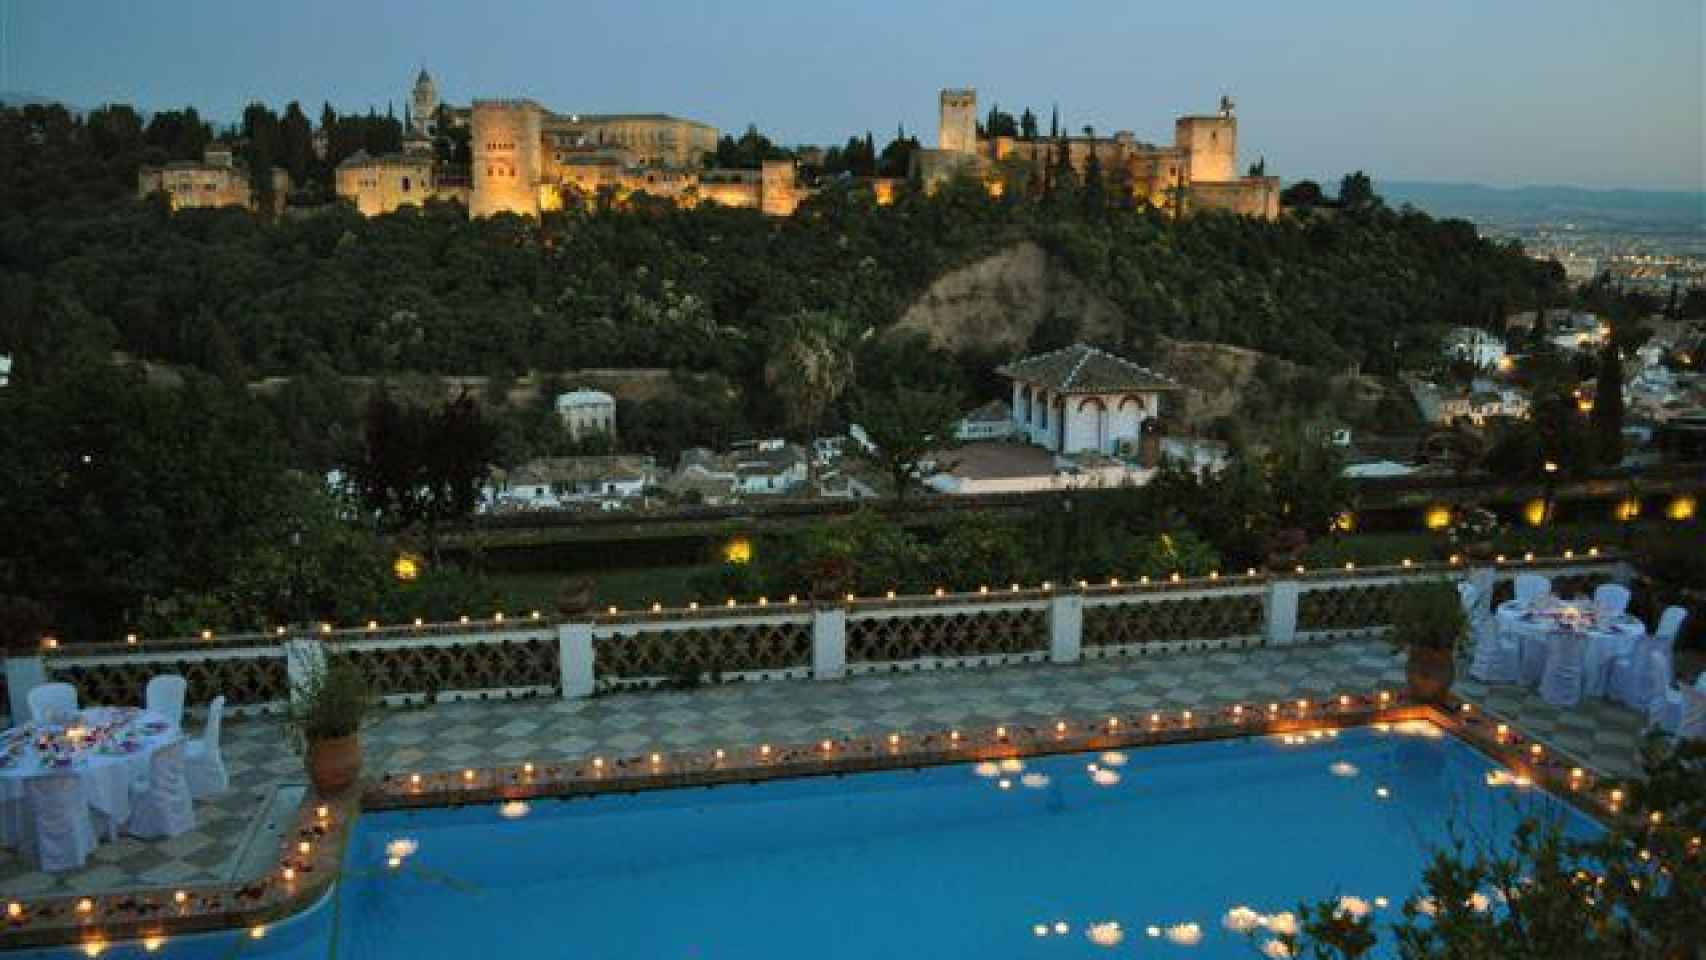 La impresionante piscina interior del carmen, con vistas a la Alhambra.